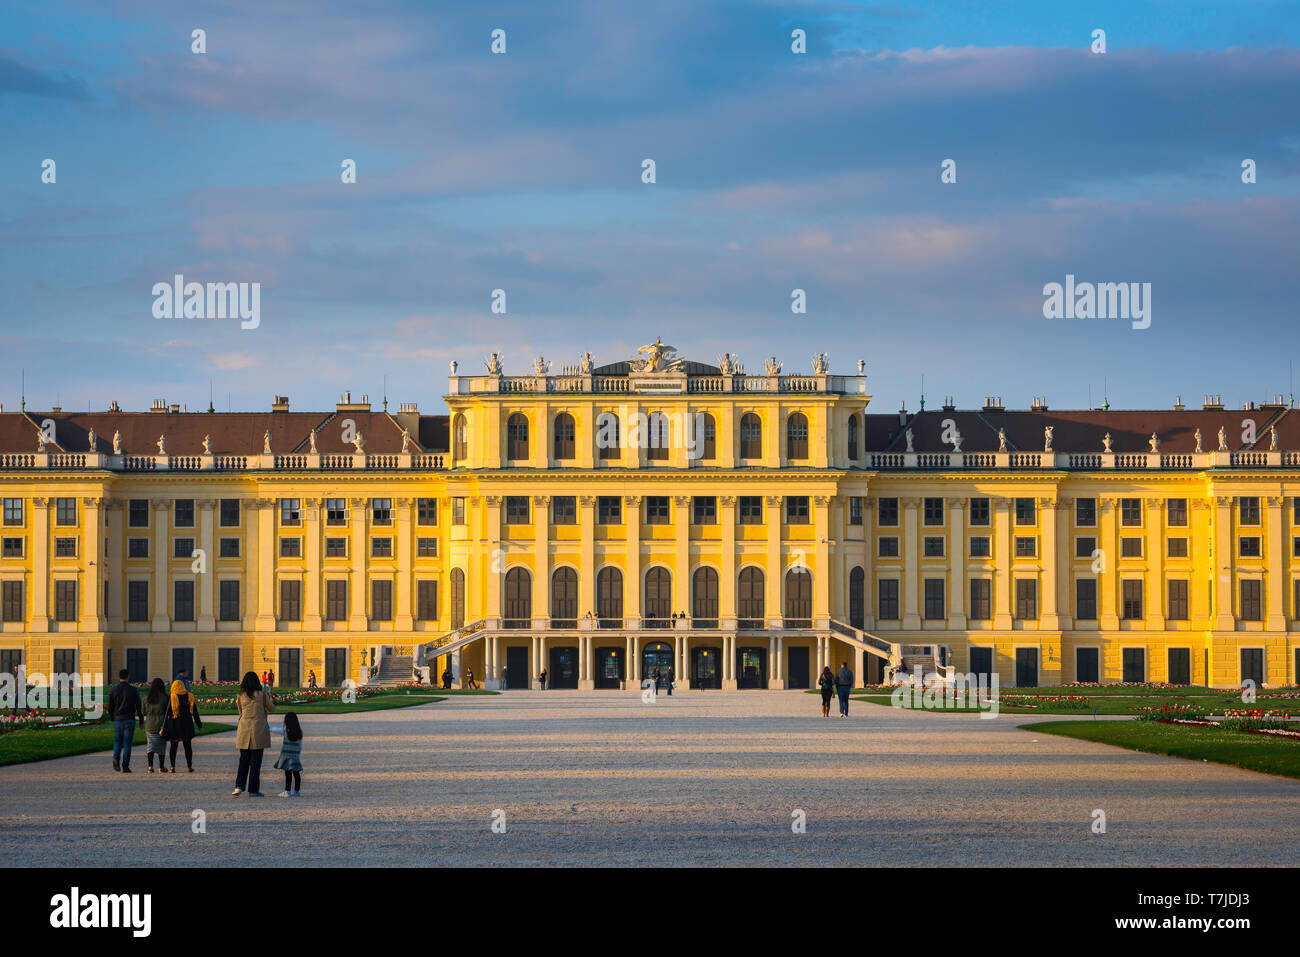 Schloss Schönbrunn, Wien, Aussicht bei Sonnenuntergang von Menschen an der barocken Fassade an der Südseite des Schloss Schönbrunn in Wien, Österreich. Stockfoto